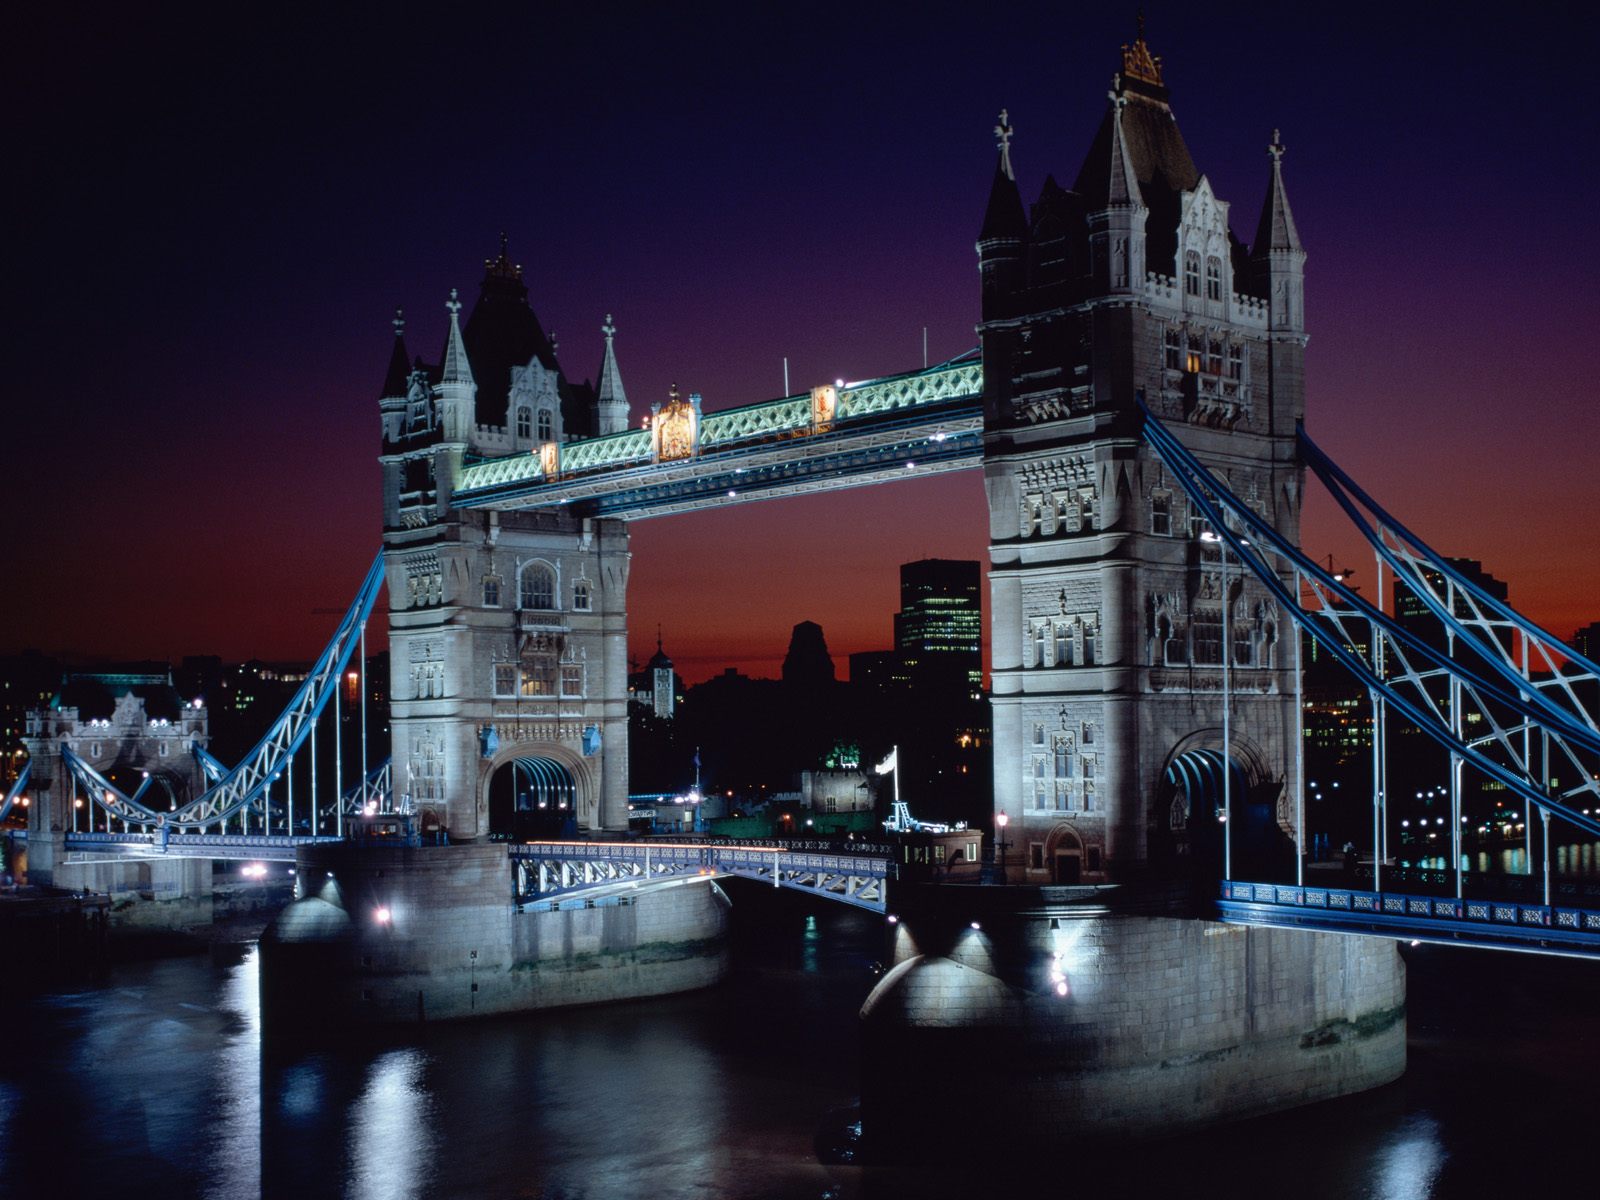 http://1.bp.blogspot.com/_aWMnfa5g5E0/TMZl3tqi1mI/AAAAAAAABGQ/-i4bw3n5qkE/s1600/Tower+Bridge+at+Night,+London,+England.jpg